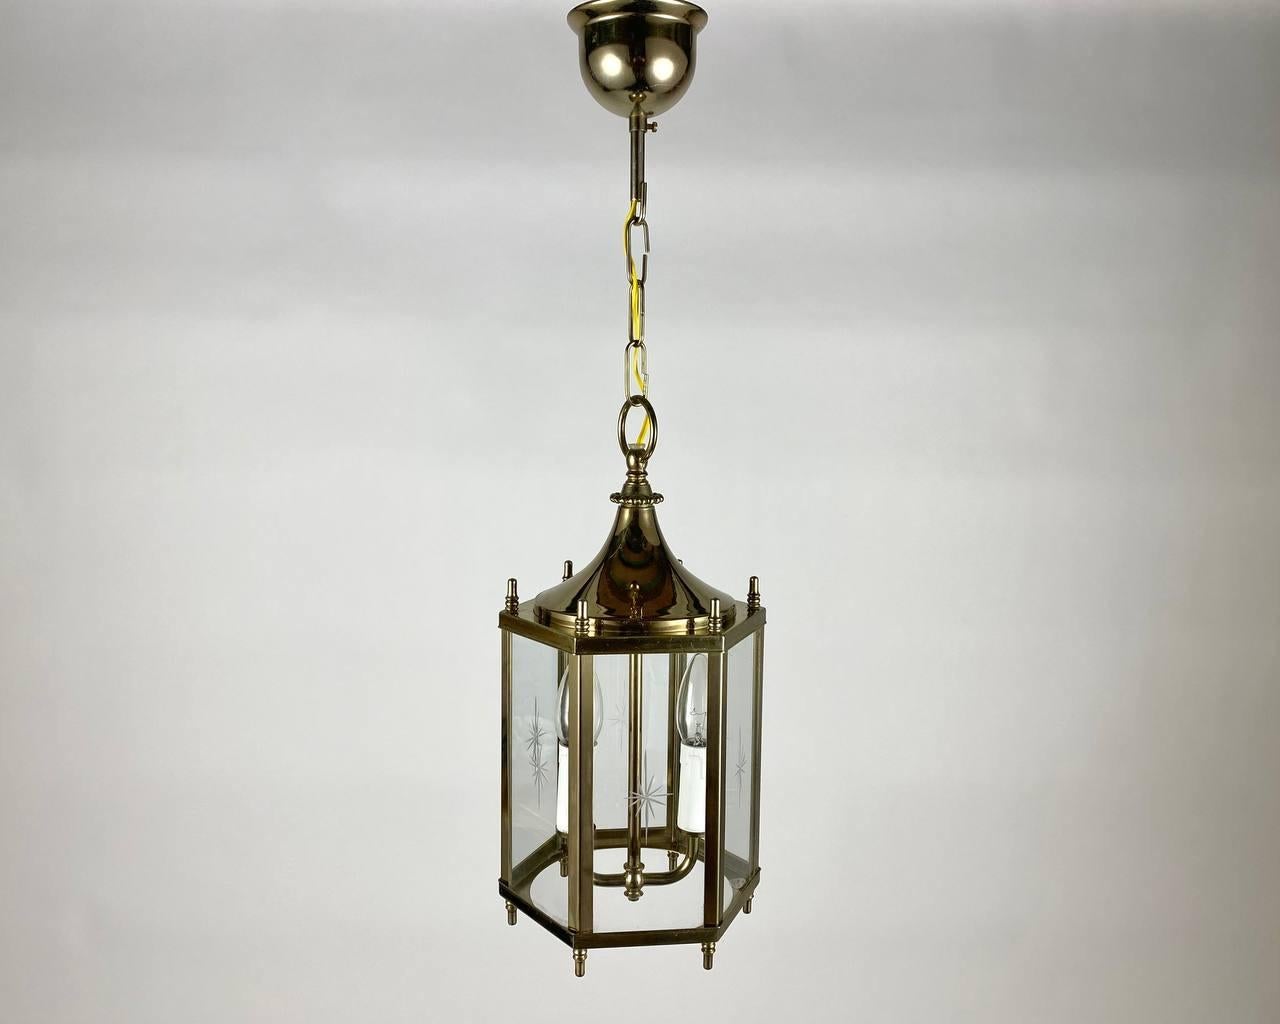 Lustre artisanal vintage - lanterne pour deux points lumineux fabriqué dans les années 1970-1980.  

Un lustre de fabricant est une combinaison étonnante de la garantie du fabricant et du design du luminaire.

L'abat-jour hexagonal est livré avec